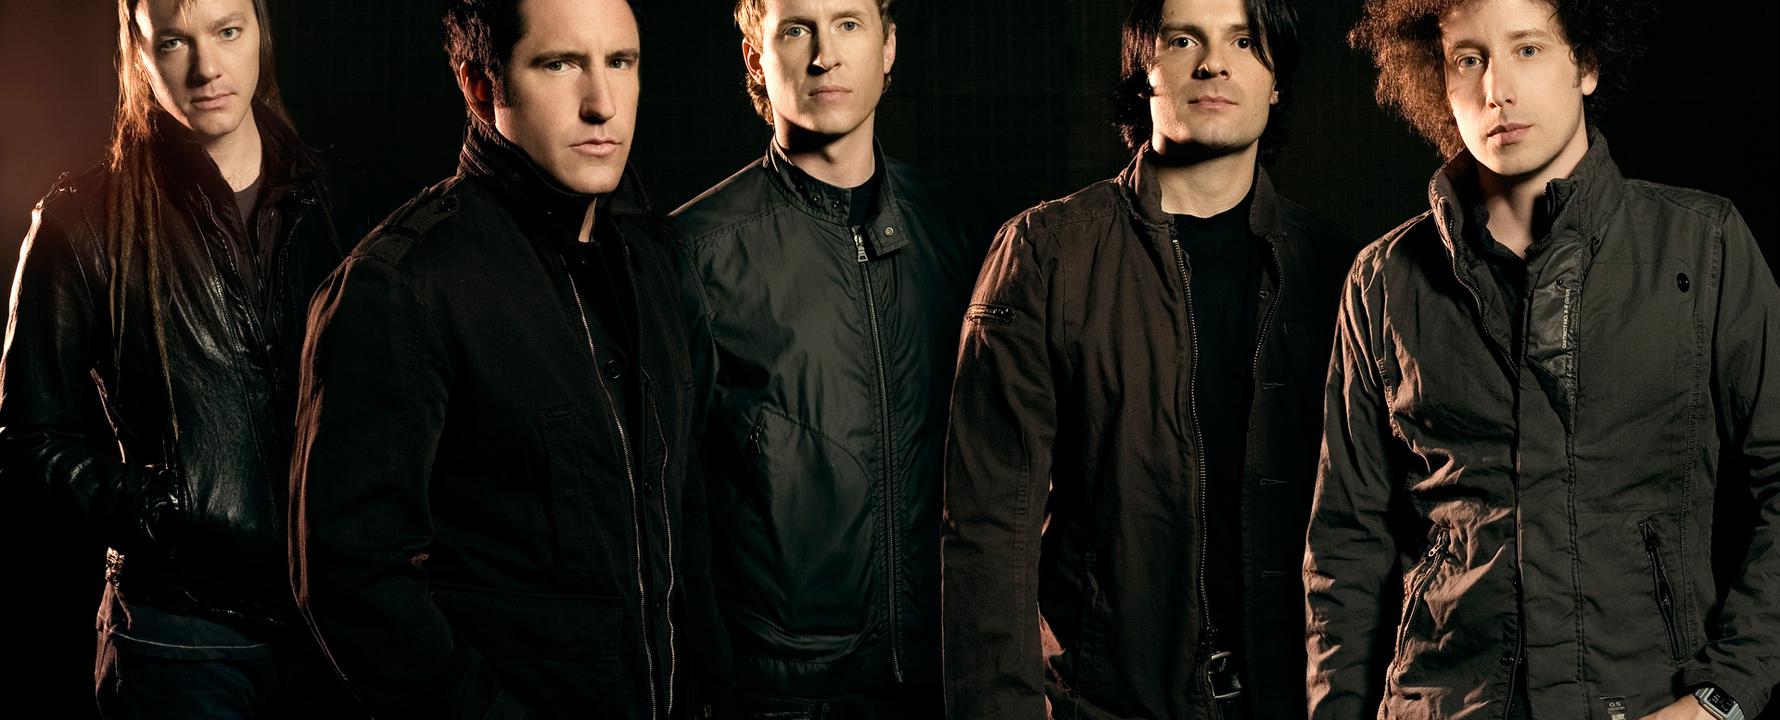 Photographie promotionnelle de Nine Inch Nails.